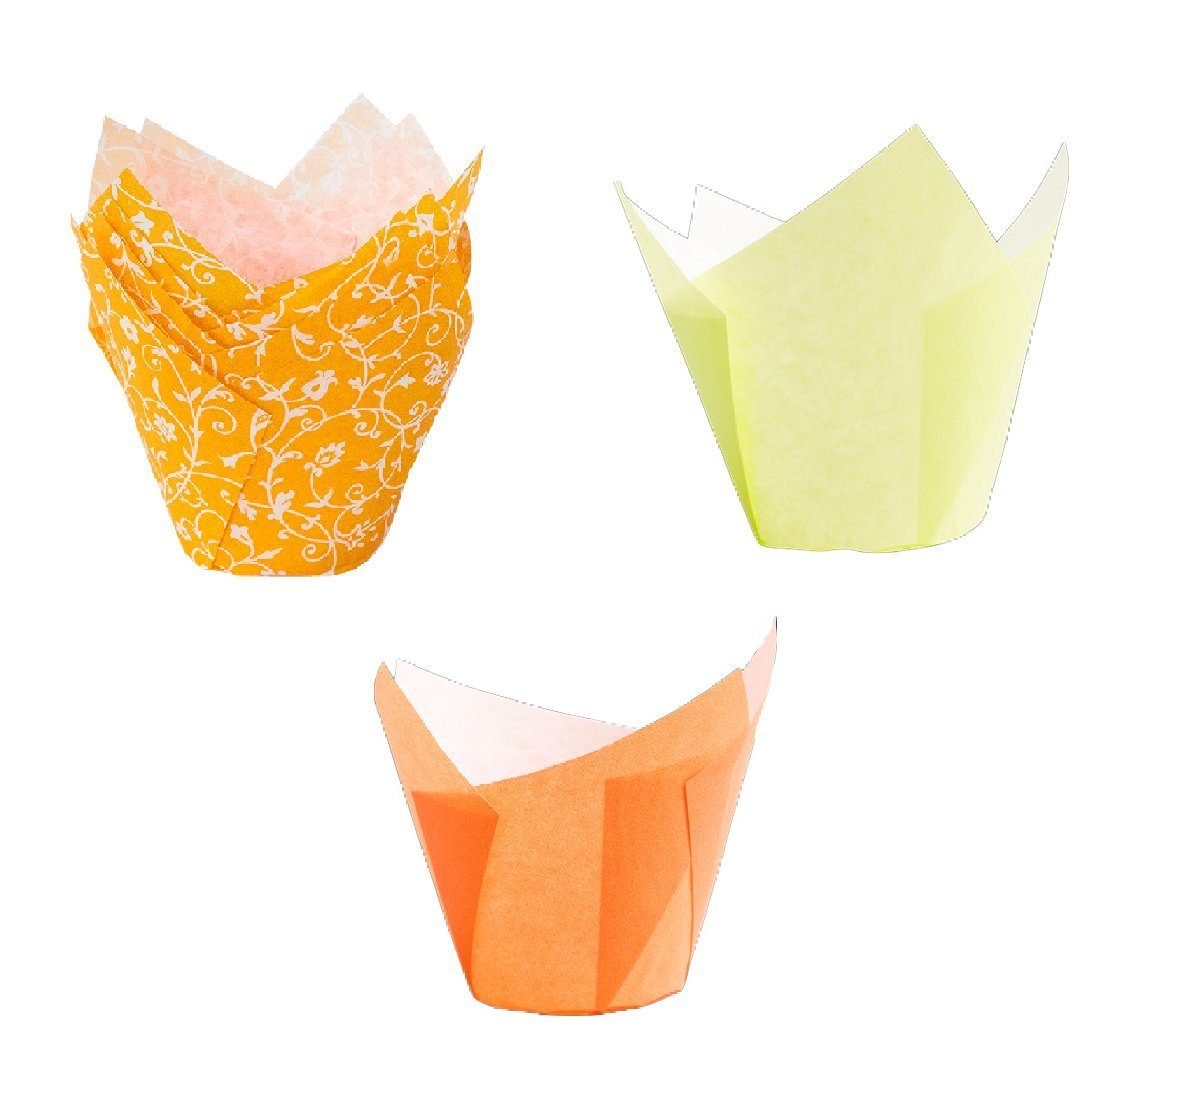 Demmler Muffinform Tulip-Wrap Set Gelb/Orange - Tulpenförmige Muffinförmchen -, zum stilvollen Anrichten von Muffins und Cupcakes - Made in Germany